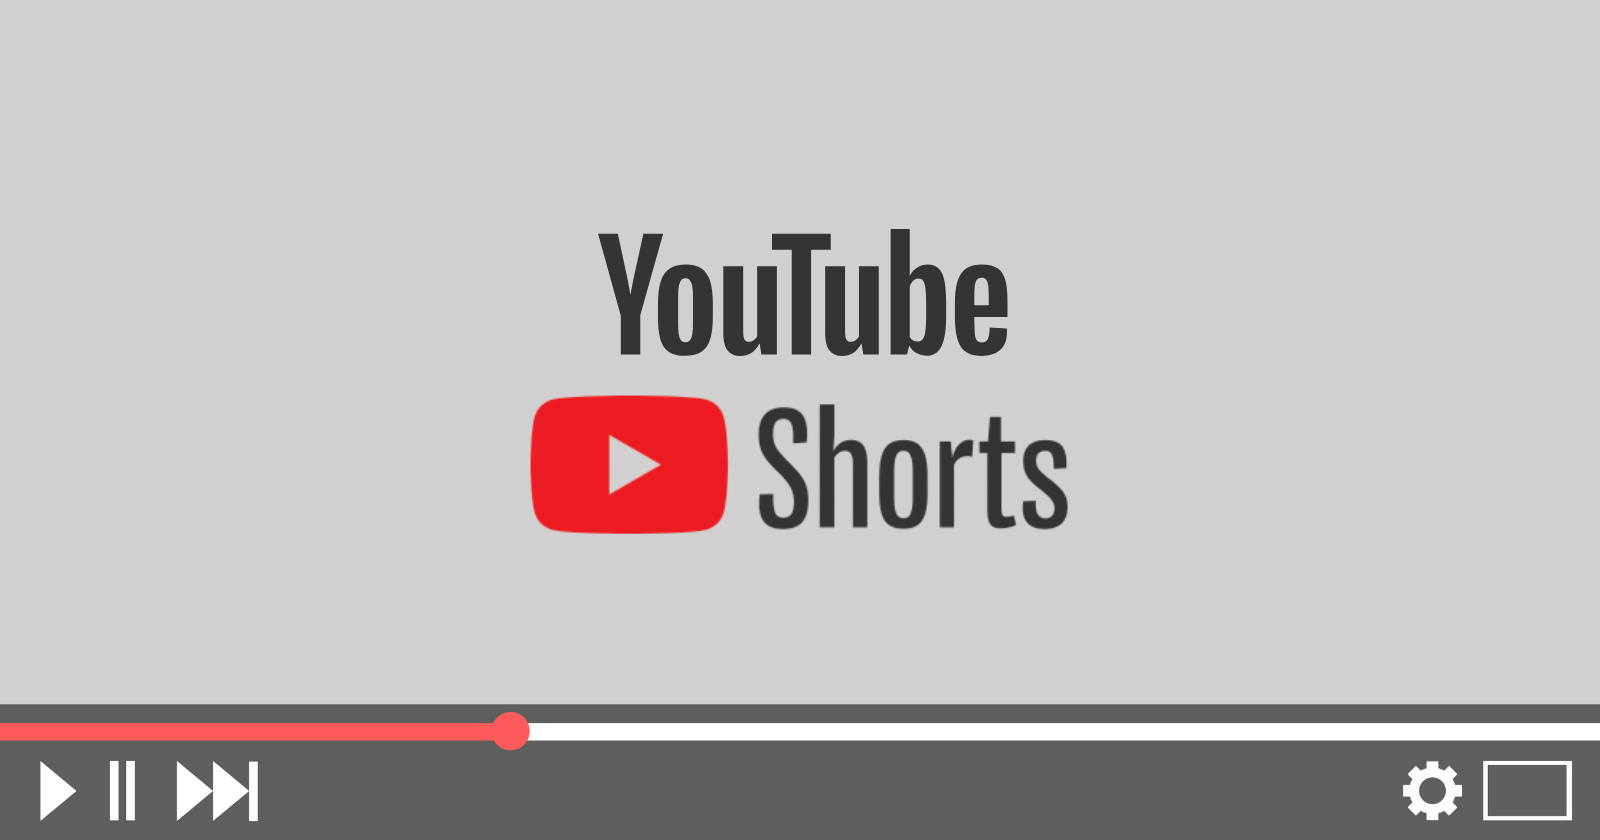 Yt shorts. Shorts ютуб. Yuotobe.shoyrts. Youtube Shortis. Логотип ютуб Шортс.